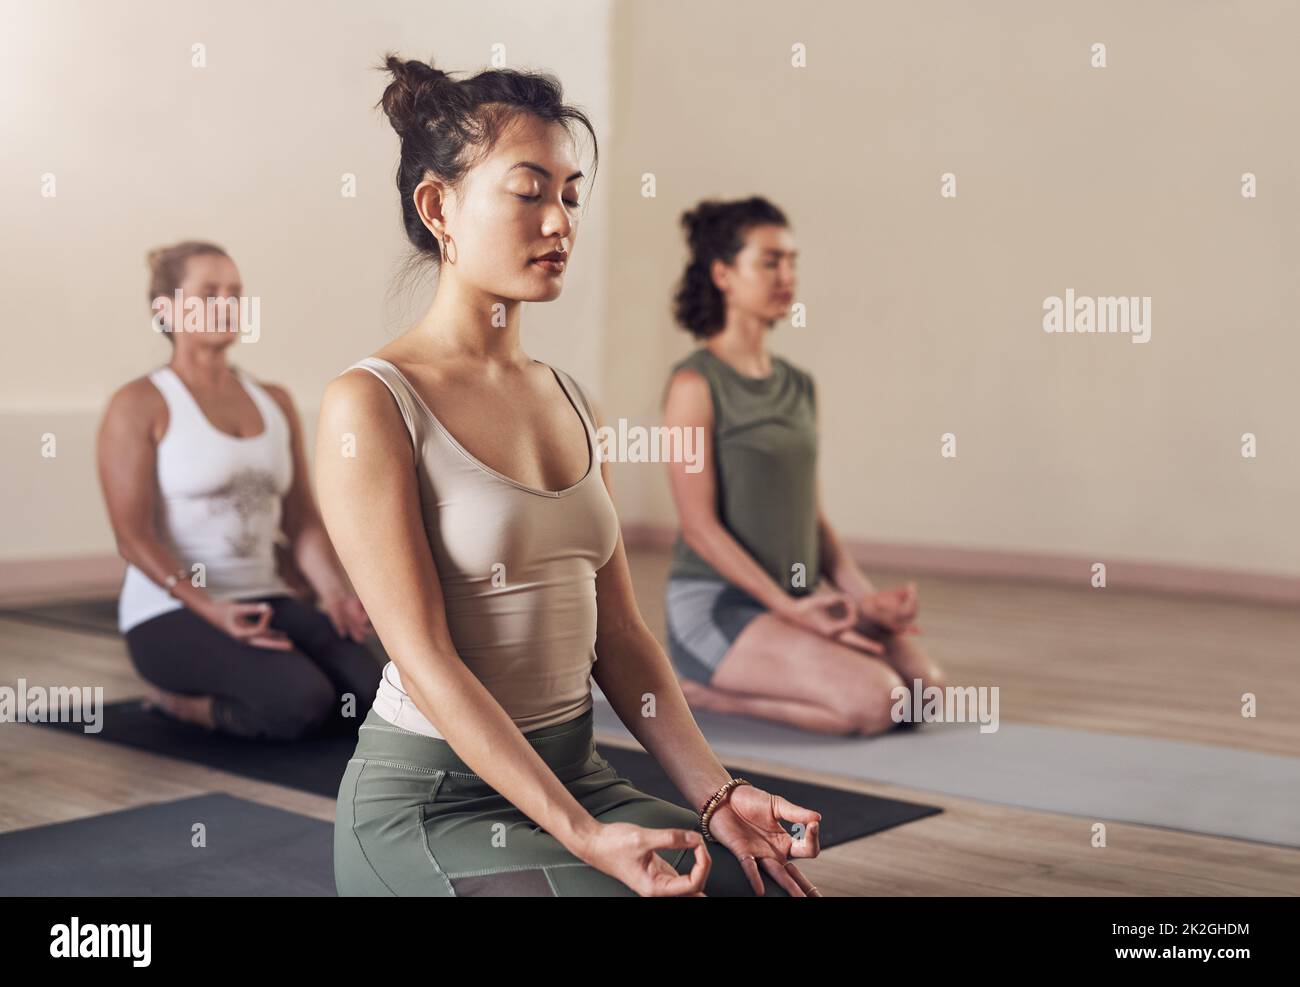 La méditation est un entraînement pour l'esprit. Photo d'une jeune femme attirante méditant dans un cours de yoga. Banque D'Images